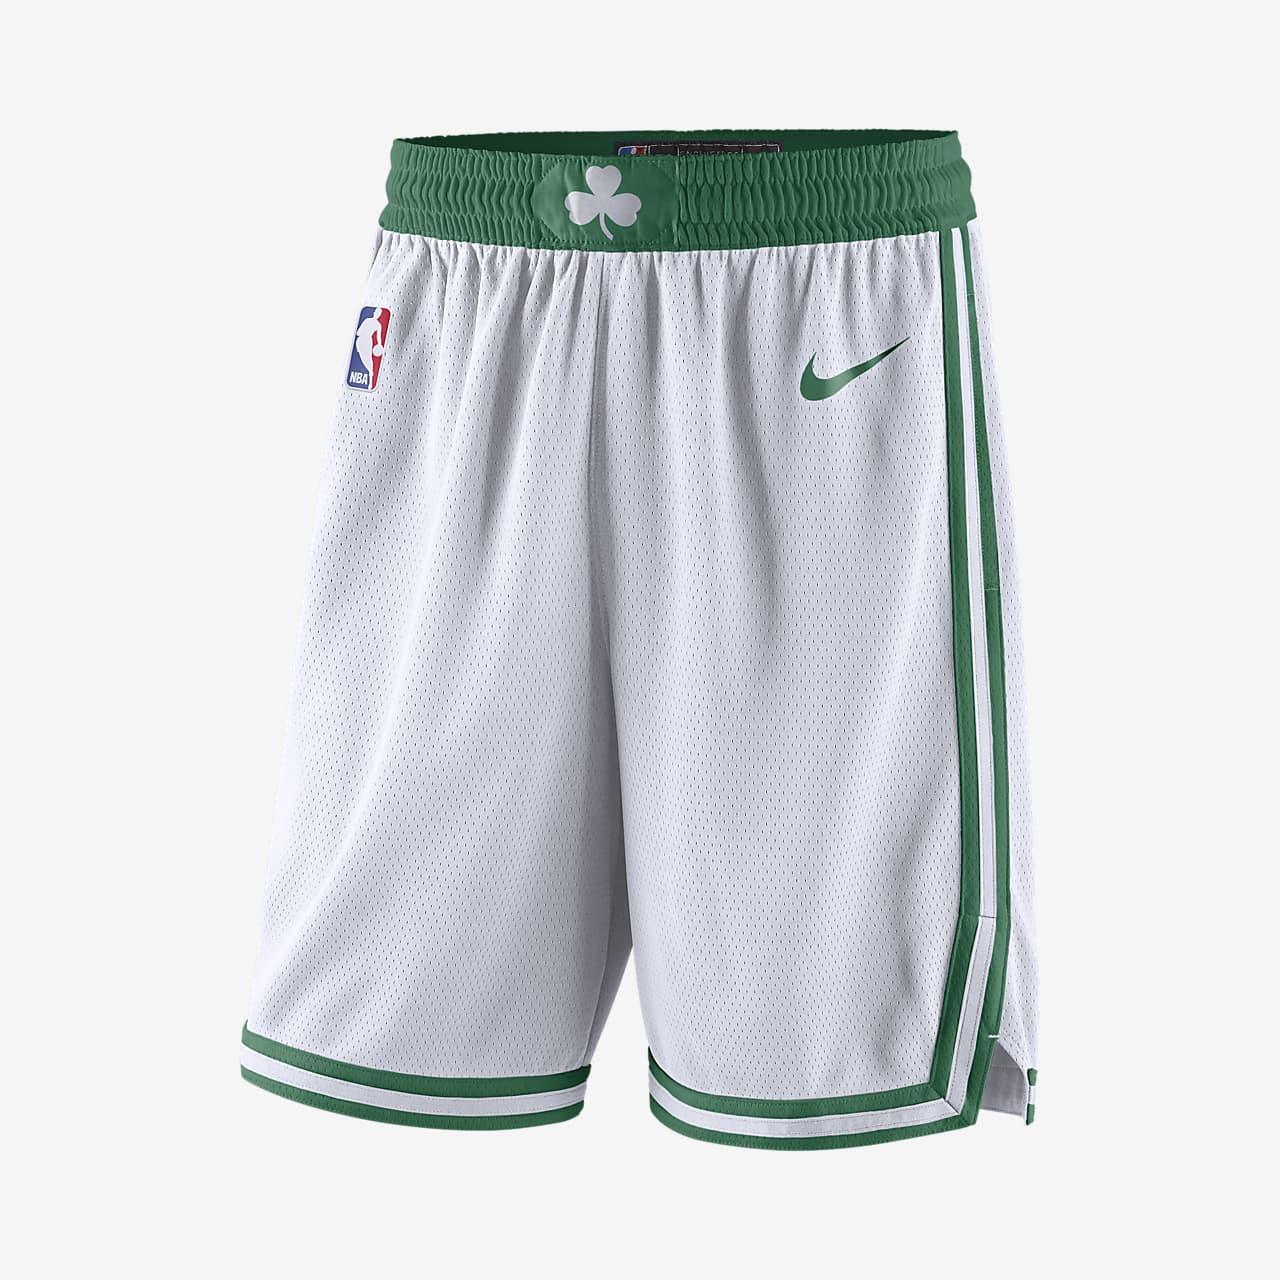 Boston Celtics Men's Nike NBA Swingman Shorts